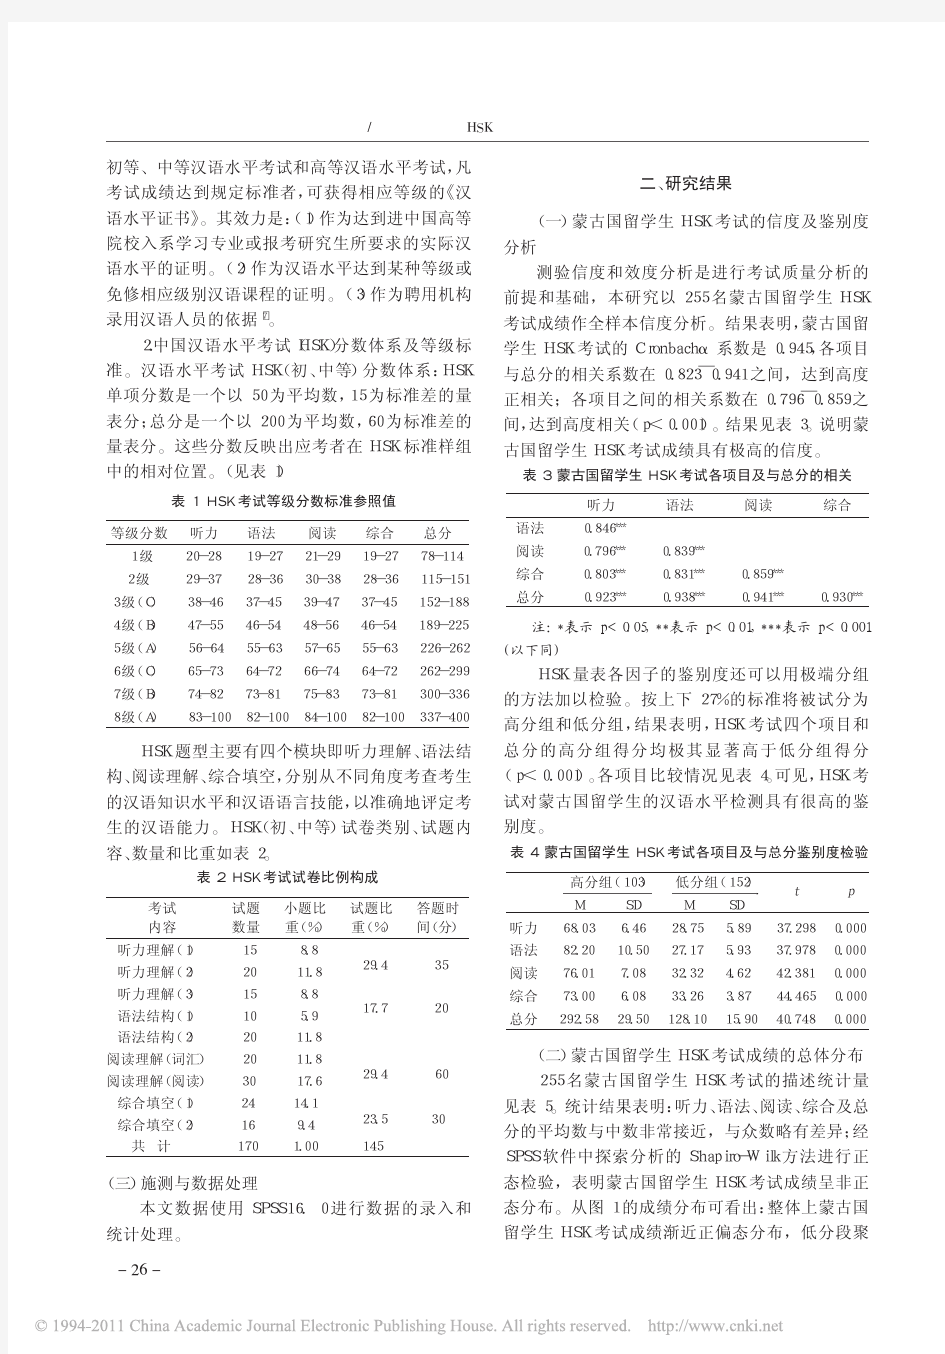 蒙古国留学生HSK考试成绩的量化分析报告